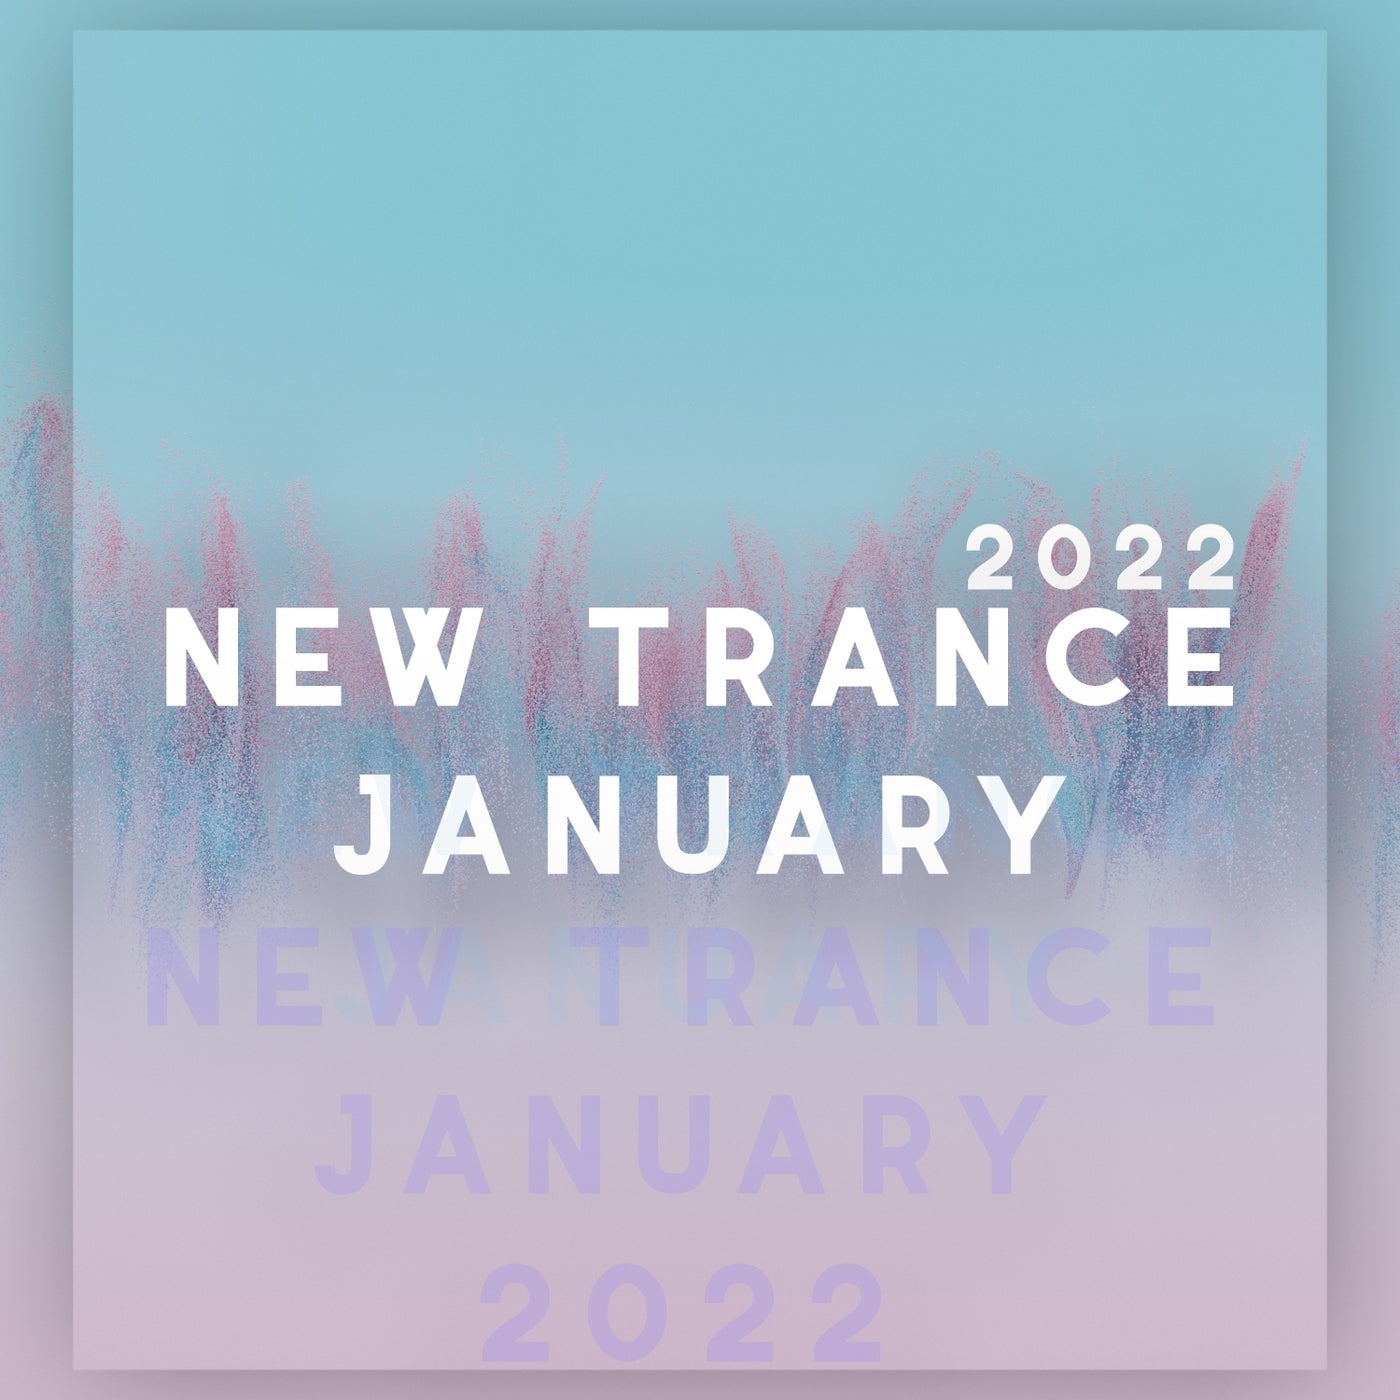 New Trance January 2022